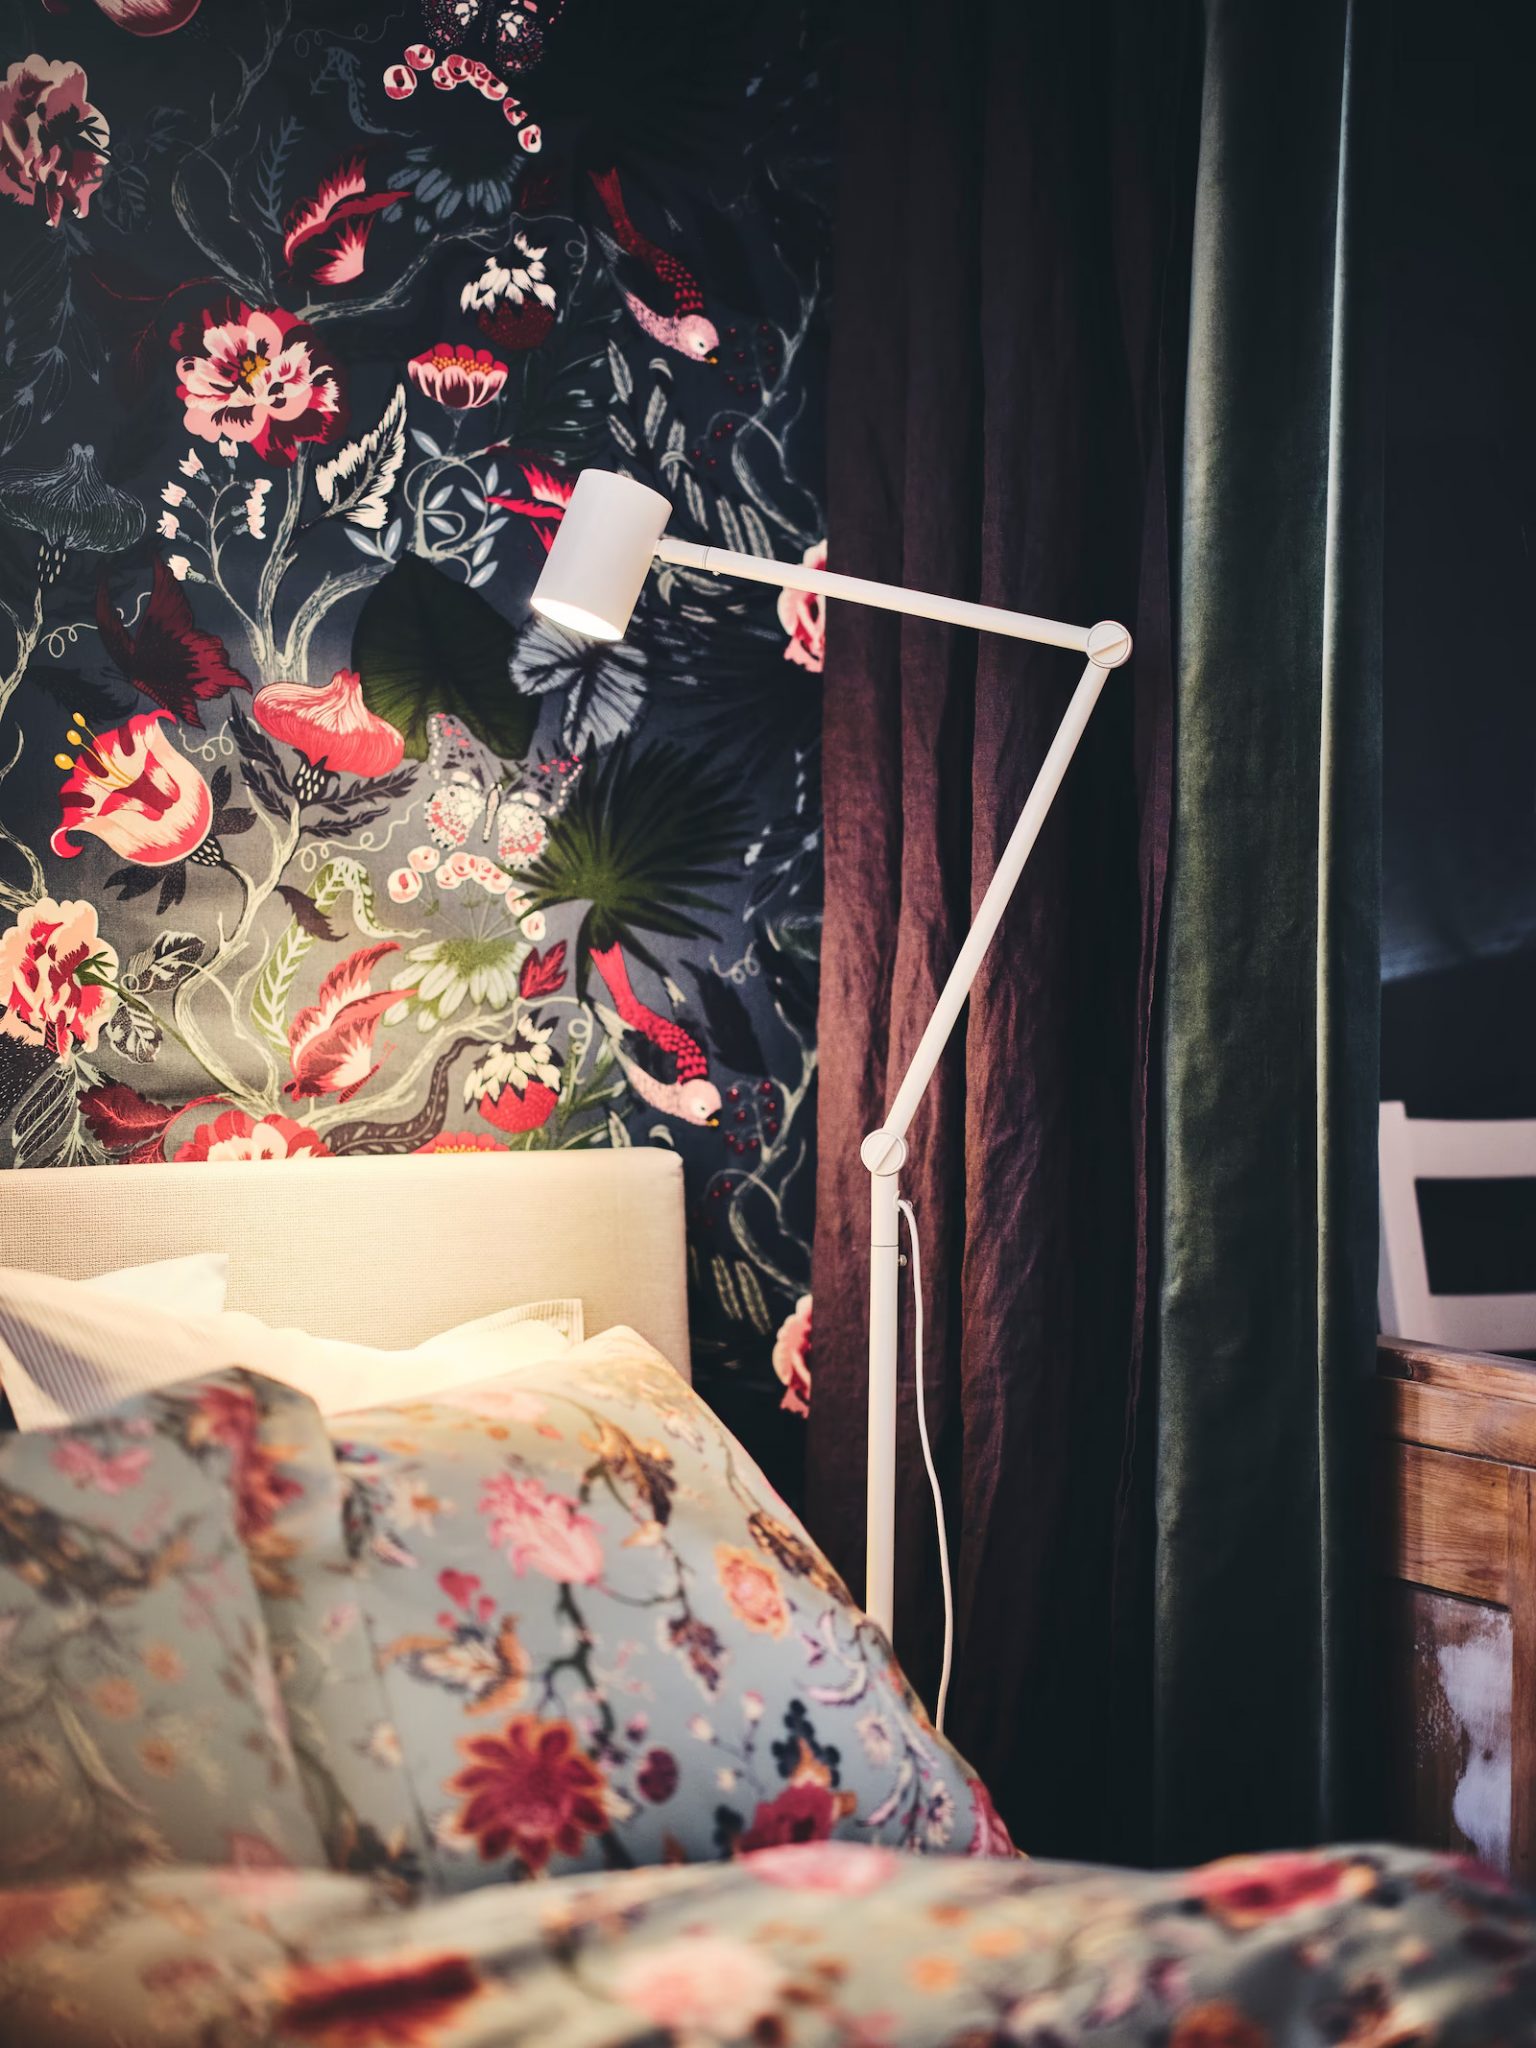 lit avec draps fleuris